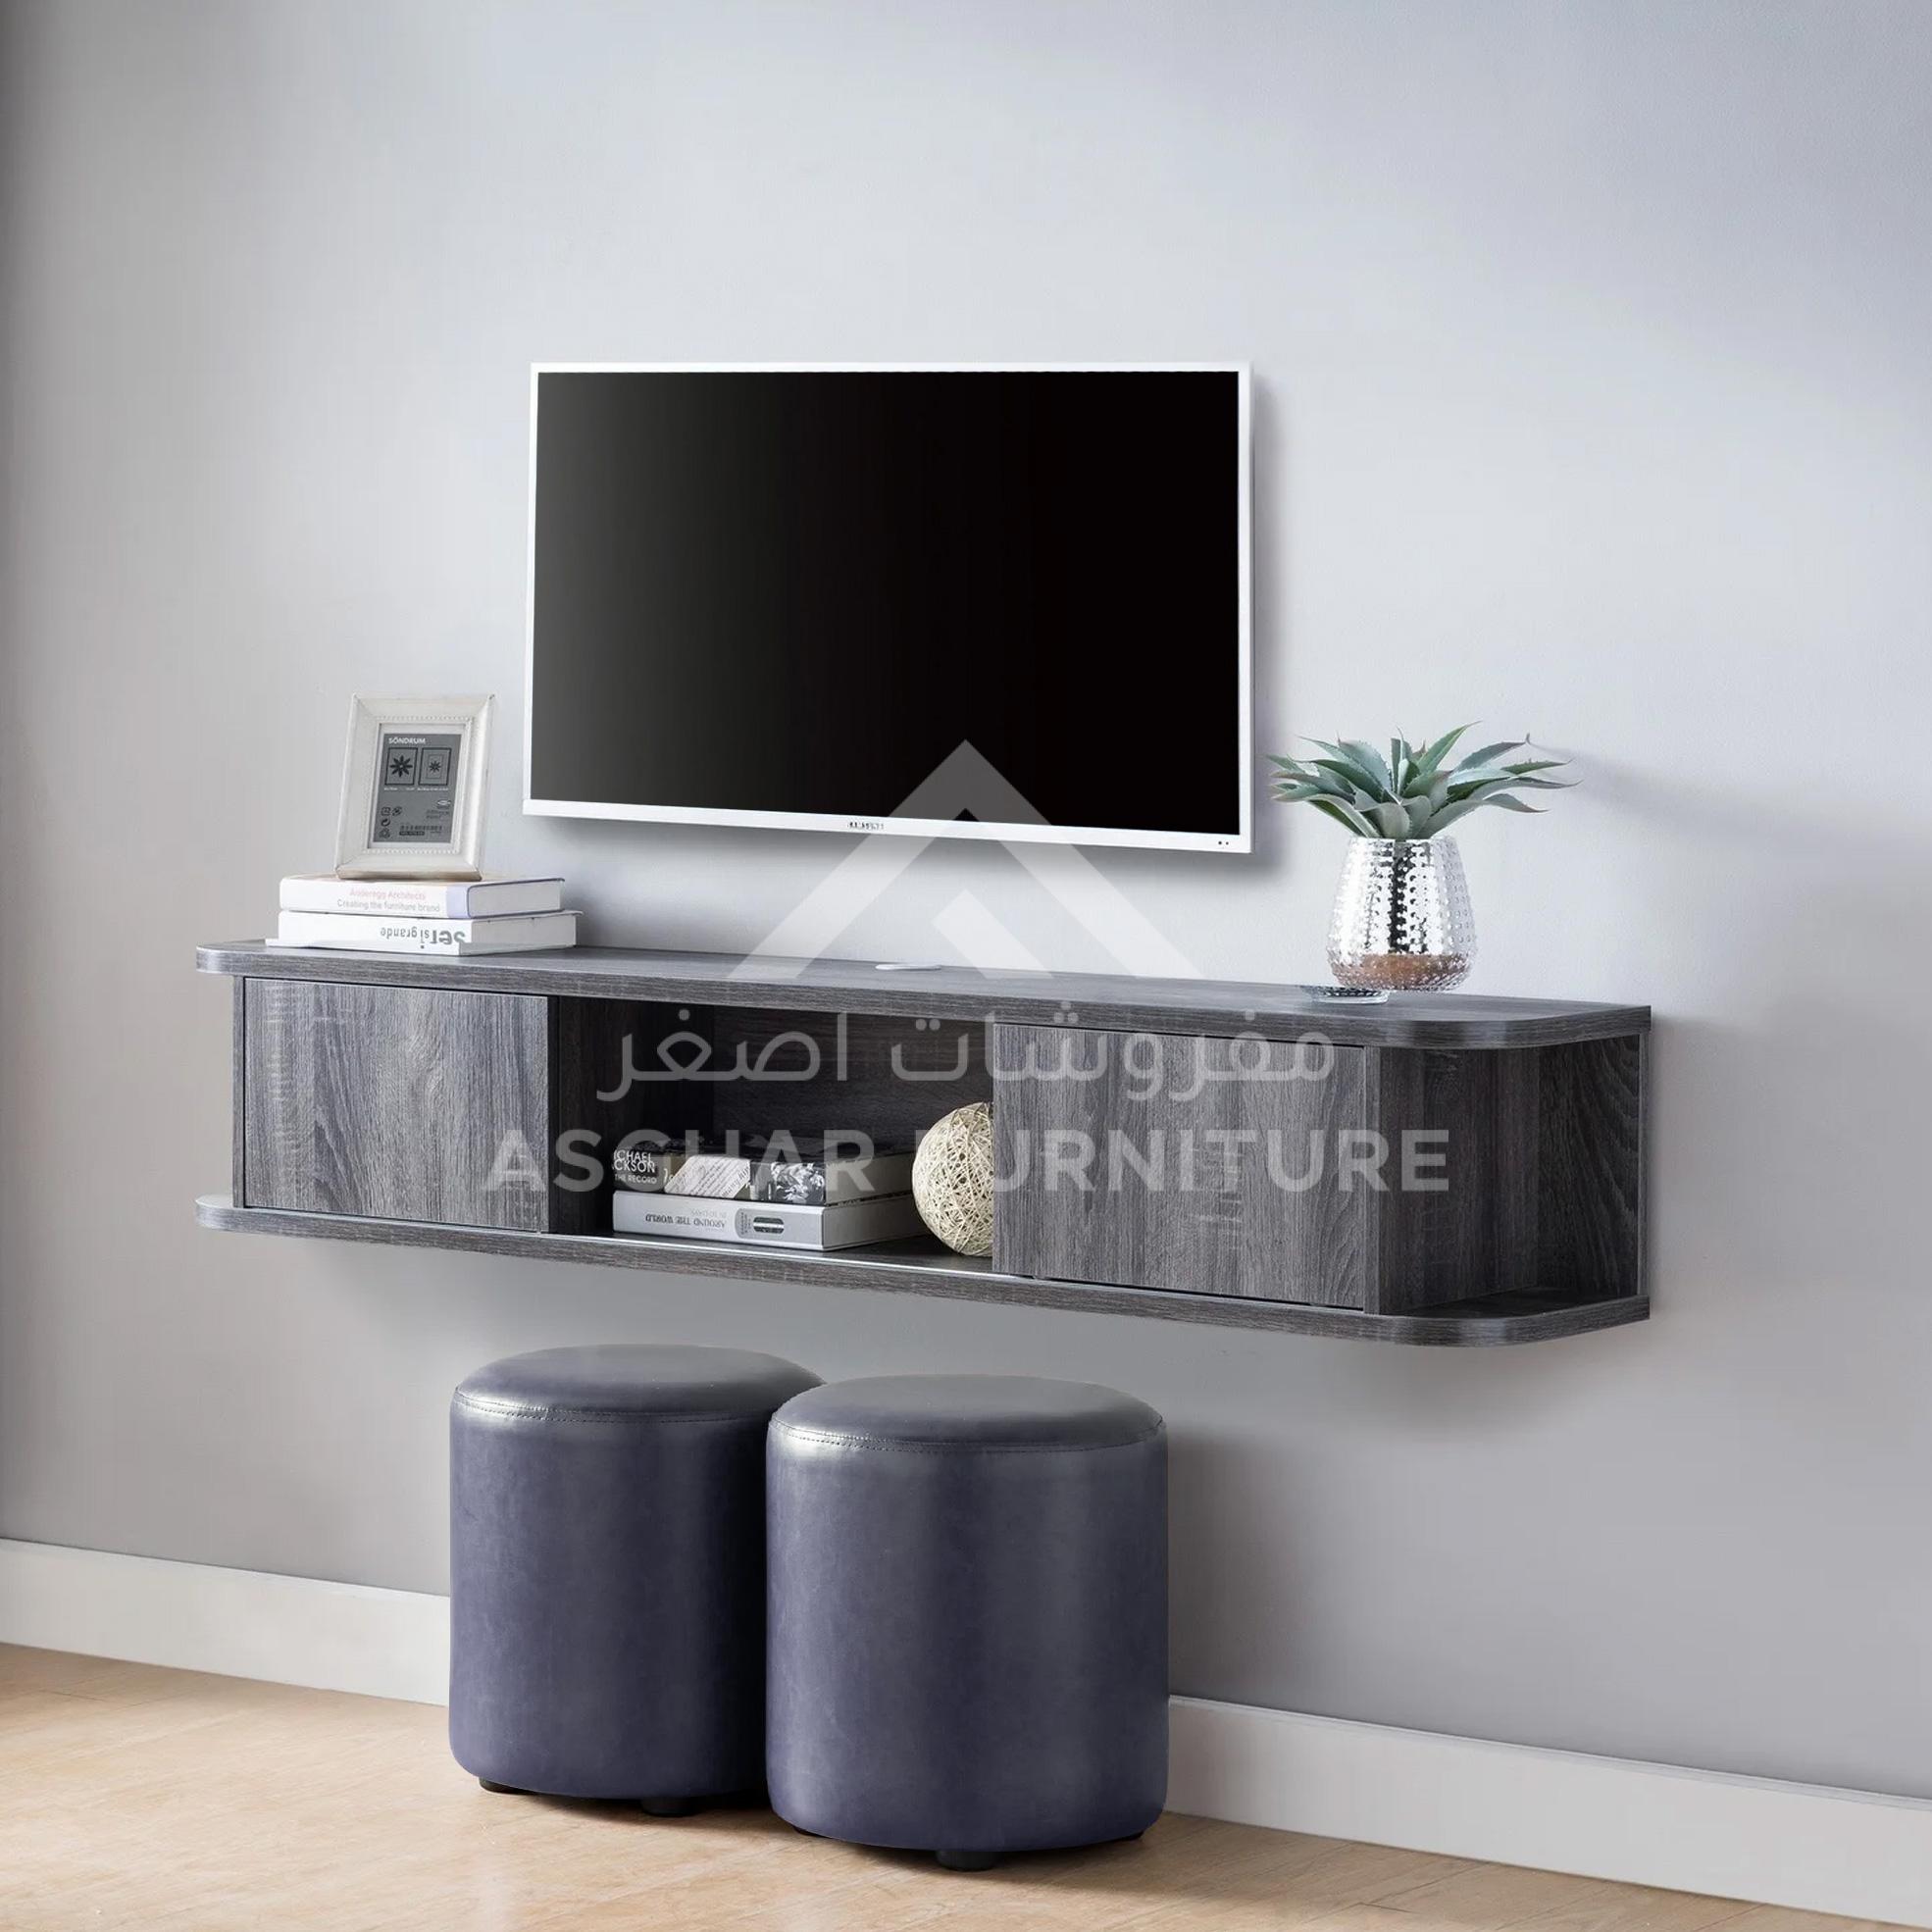 Wall-Mounted Media Console - Asghar Furniture: Shop Online Home Furniture  Across UAE - Dubai, Abu Dhabi, Al Ain, Fujairah, Ras Al Khaimah, Ajman,  Sharjah.